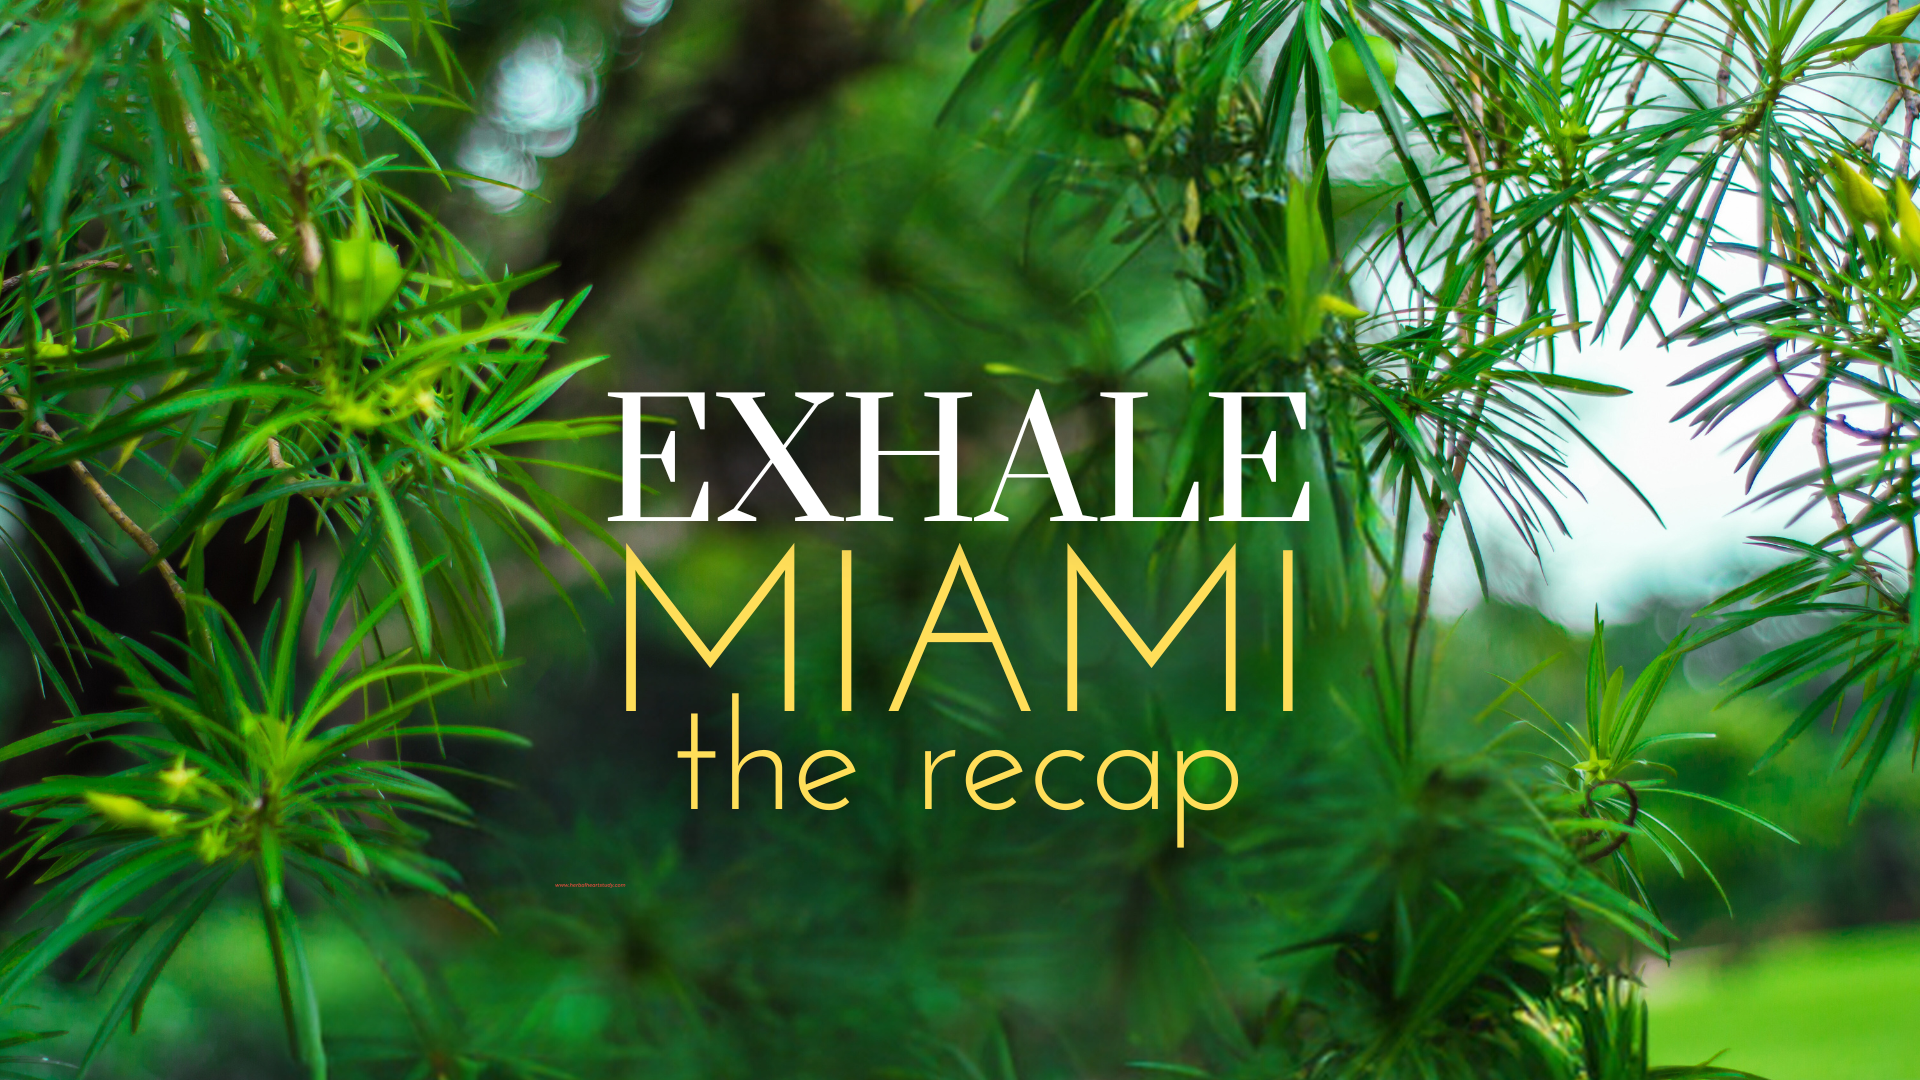 EXHALE MIAMI: THE RECAP